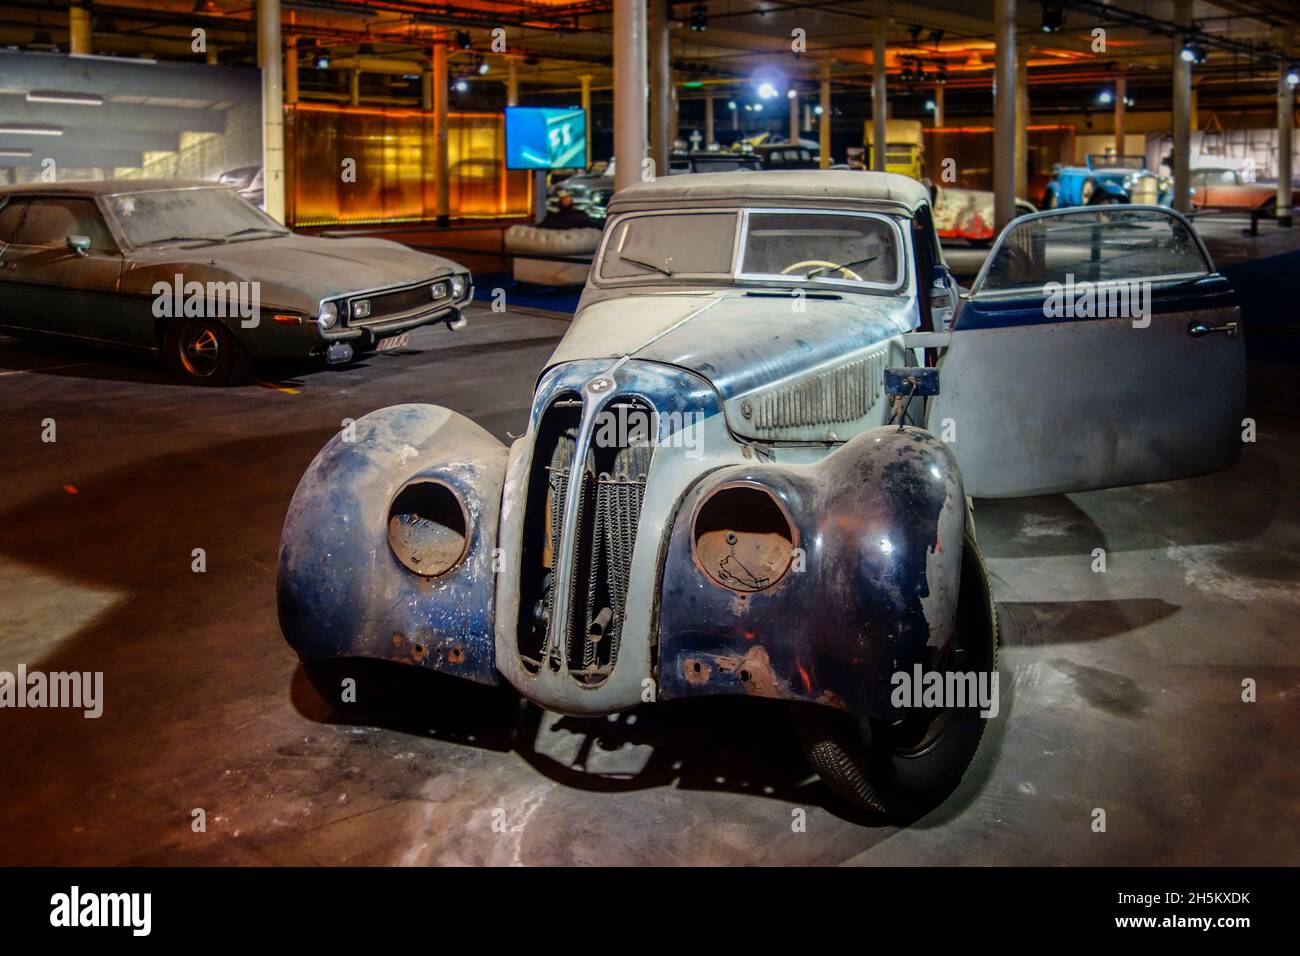 Rusty et Dusty 1938 BMW 327/28 Touring coupé, voiture classique allemande / oldtimer, en mauvais état prêt à être restauré dans le garage Banque D'Images